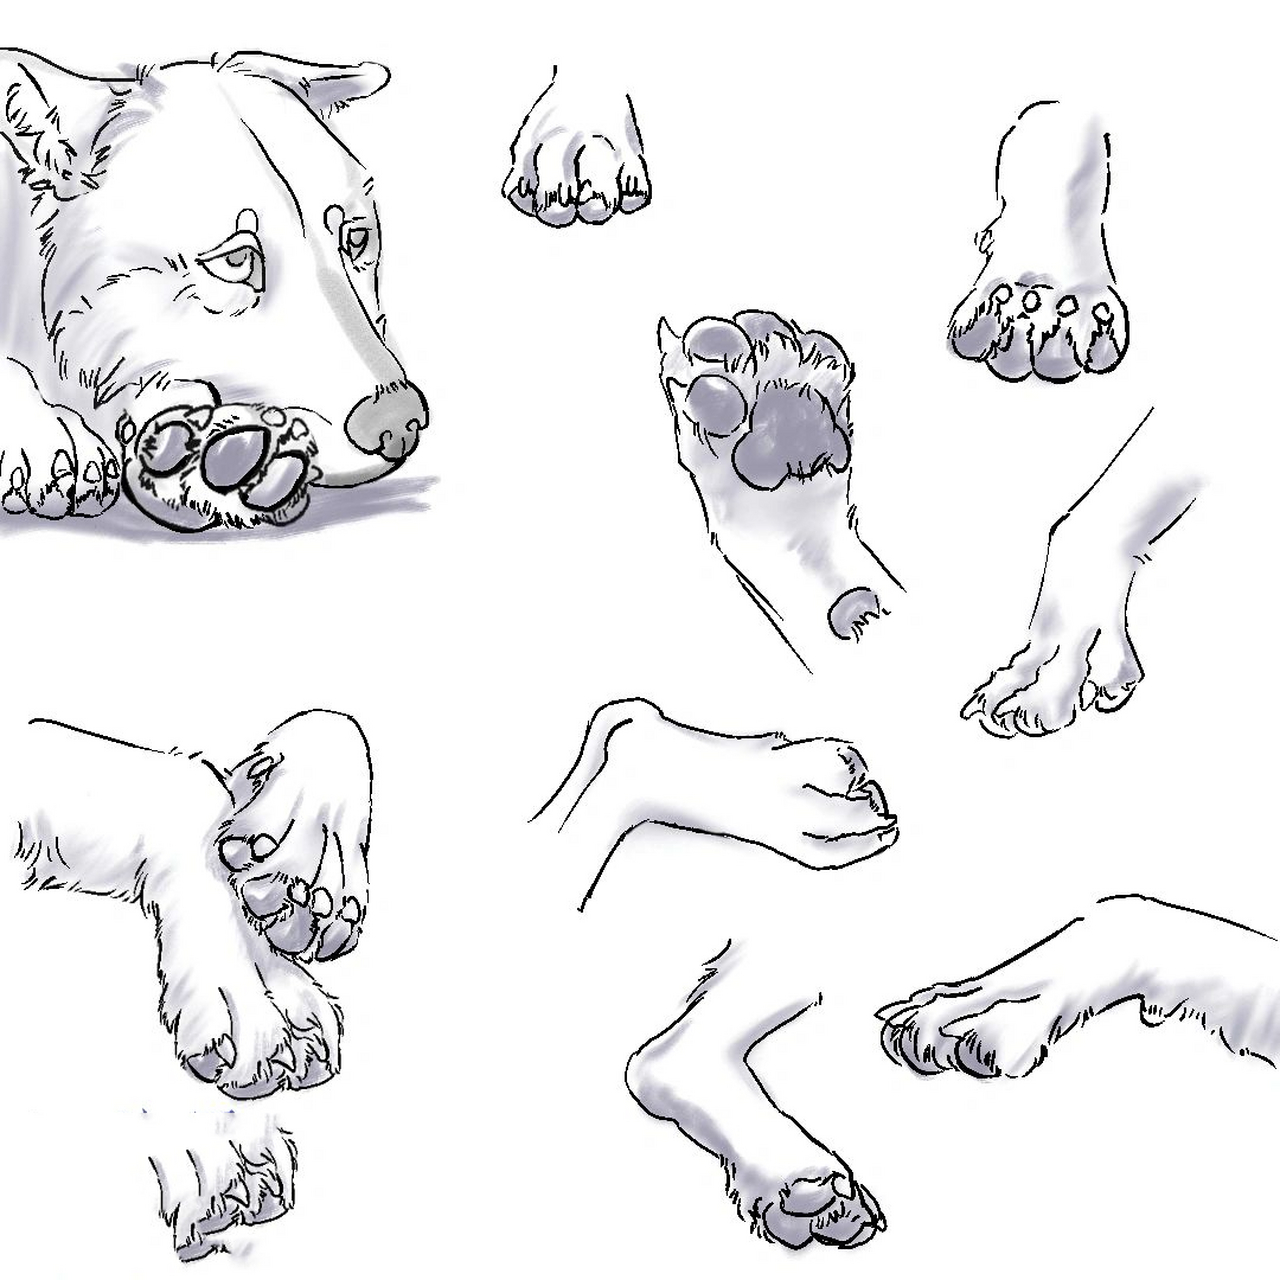 犬科动物爪子绘画教程 正式版来啦p1是新增的